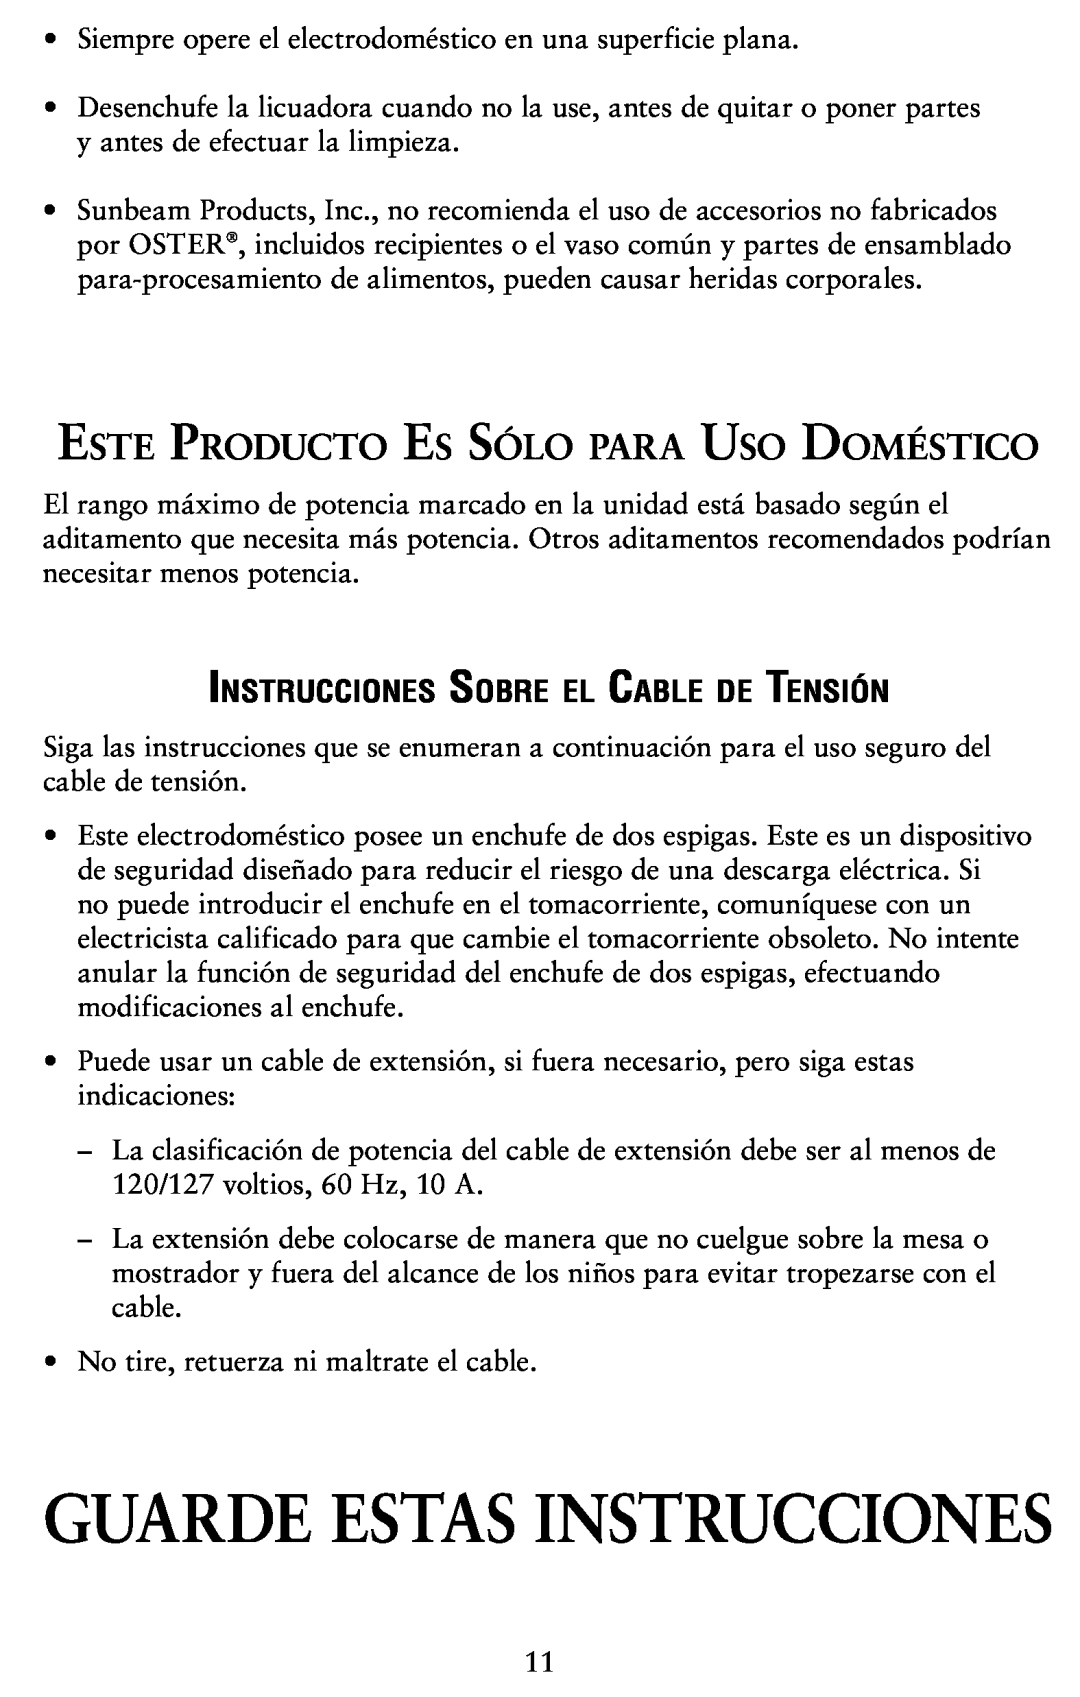 Oster Oster Digital Blender user manual Este Producto Es Sólo para Uso Doméstico, Instrucciones Sobre el Cable de Tensión 